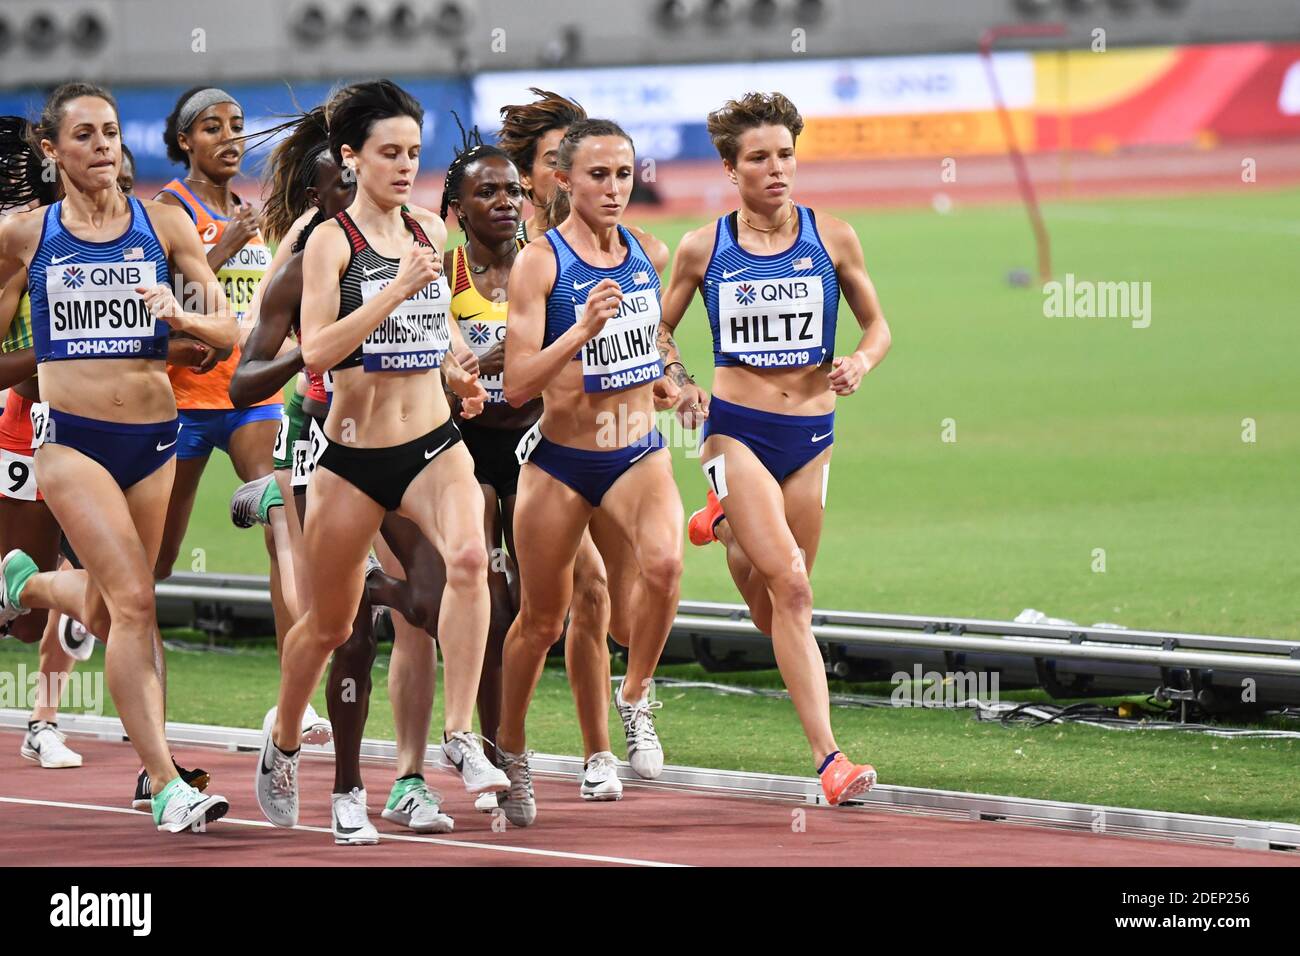 Shelby Houlihan, Nikki Hiltz (Etats-Unis), Winny Chebet (KEN), Gabriela debues-Stafford (CAN). 1500 mètres de finale. Championnats du monde d'athlétisme, Doha 2019 Banque D'Images